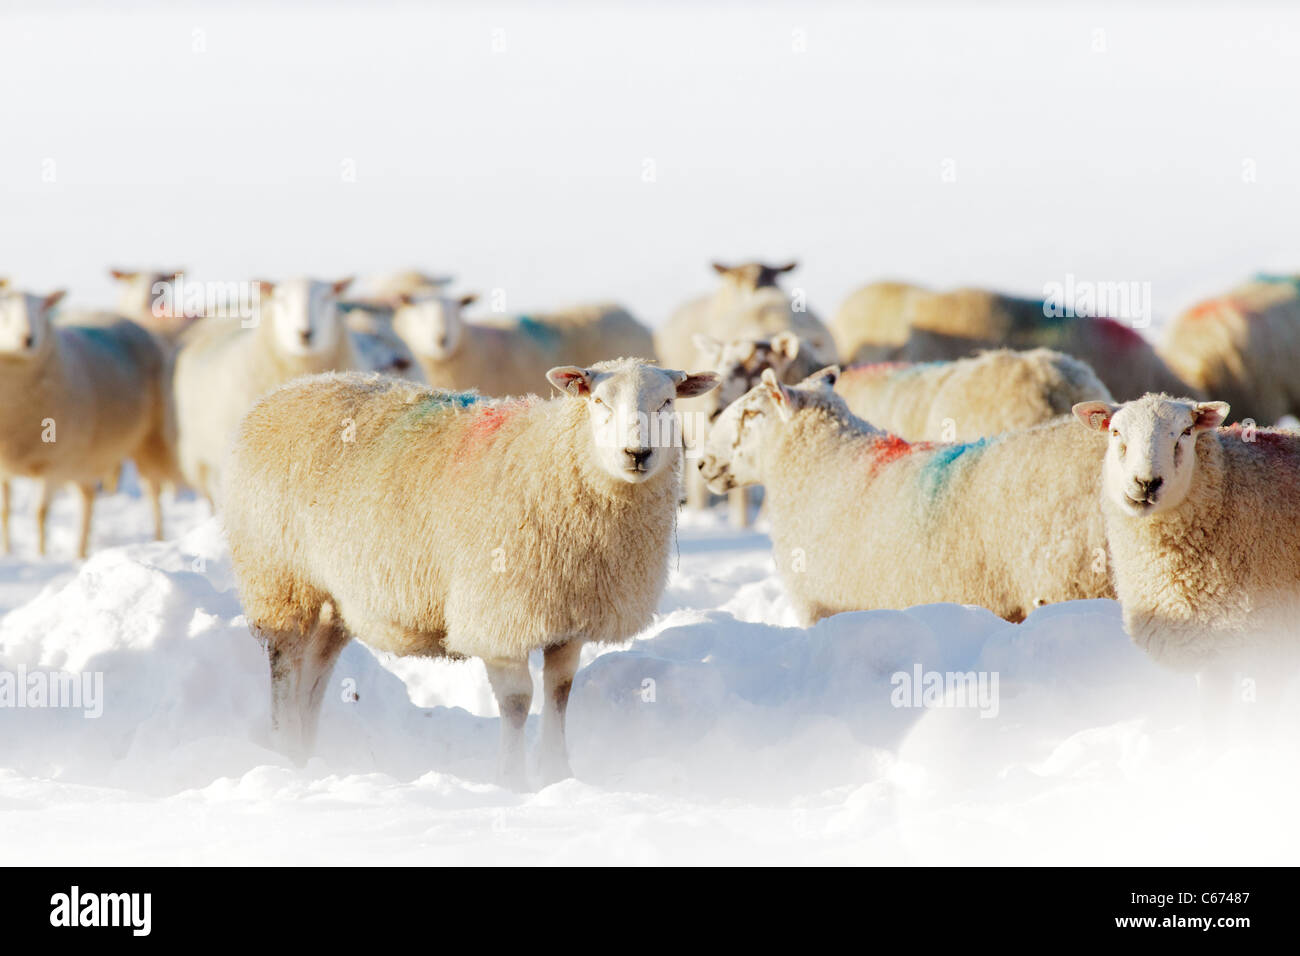 Winter-Szene in Perthshire Schottland - Schafe füttern während der Wintermonate Stockfoto